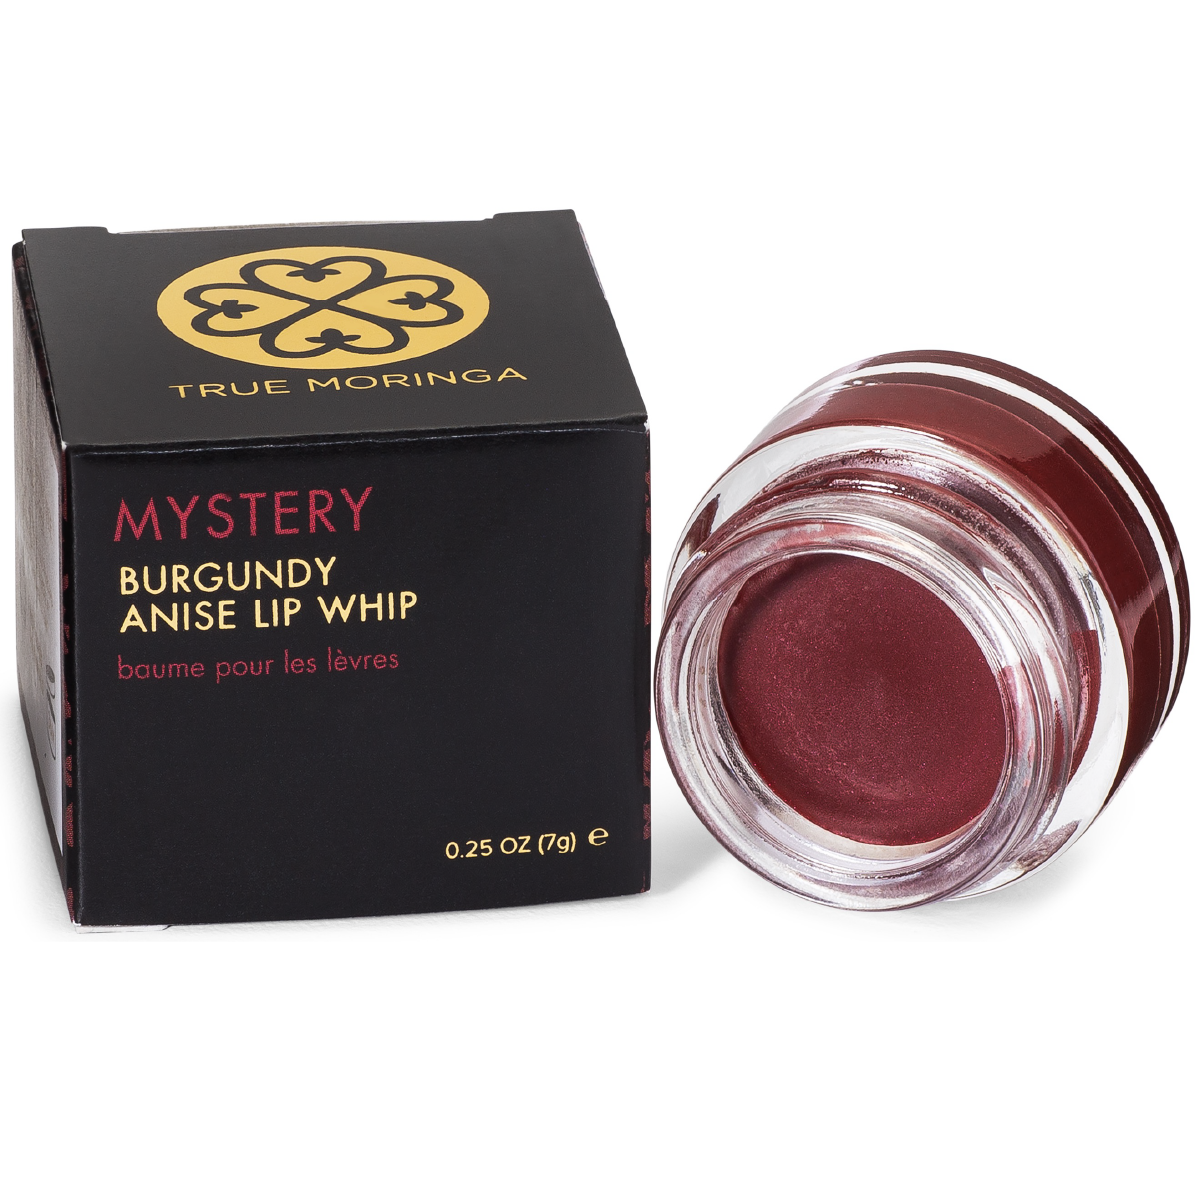 Mystery (Burgundy Anise) Lip Whip 0.25 oz - True Moringa